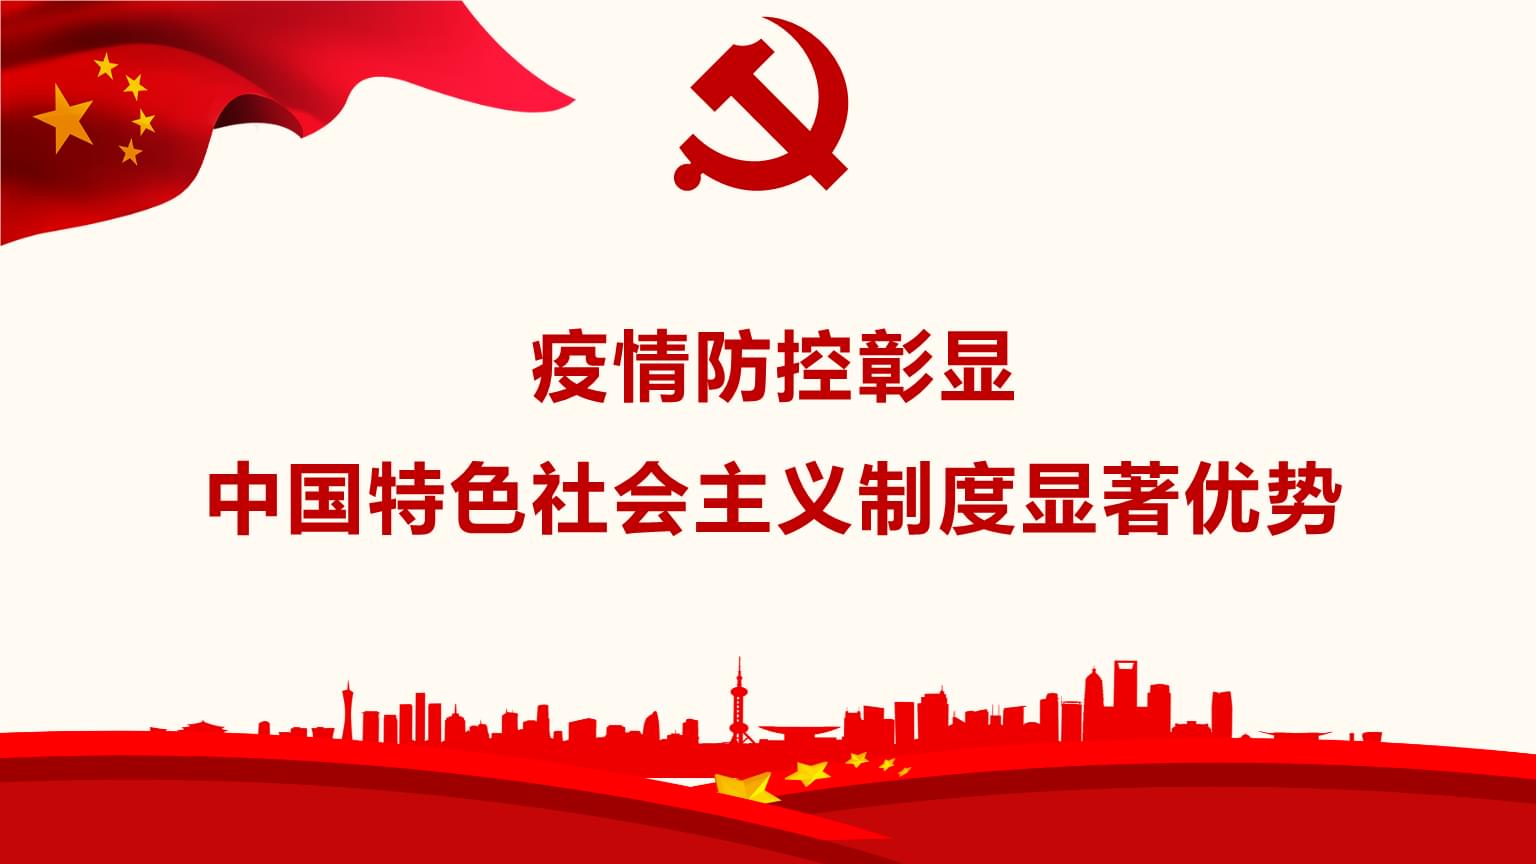 社会主义制度的确立是中国历史上最深刻最伟大的社会变革，也是20世纪中国又一次划时代的历史巨变，对此